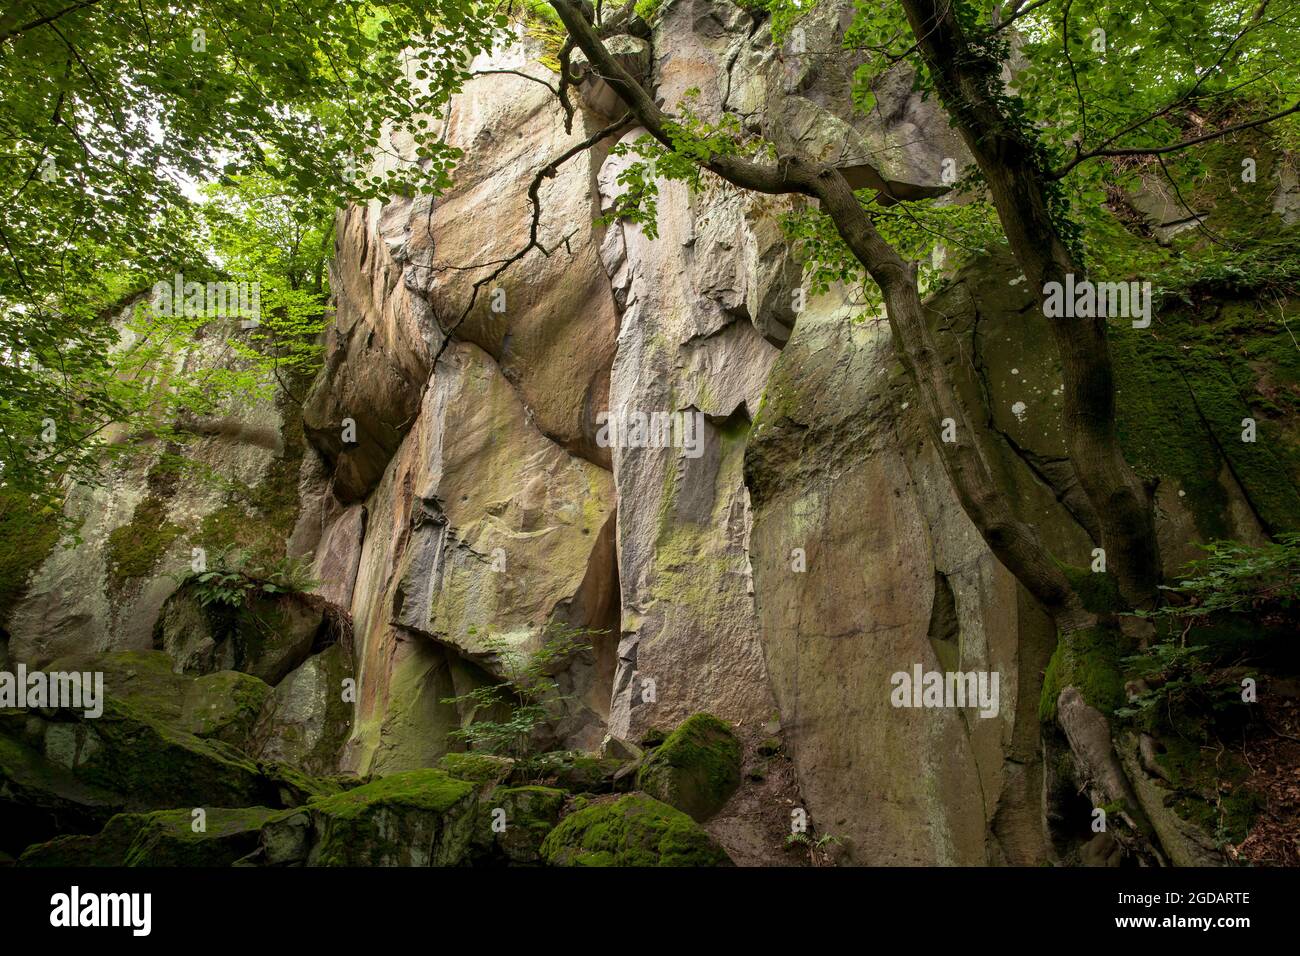 canyon rocheux de la montagne de Stenzelberg dans la chaîne de montagnes de Siebengebirge près de Koenigswinter, la montagne a servi de carrière pour la latite de quartz jusqu'à la Th Banque D'Images